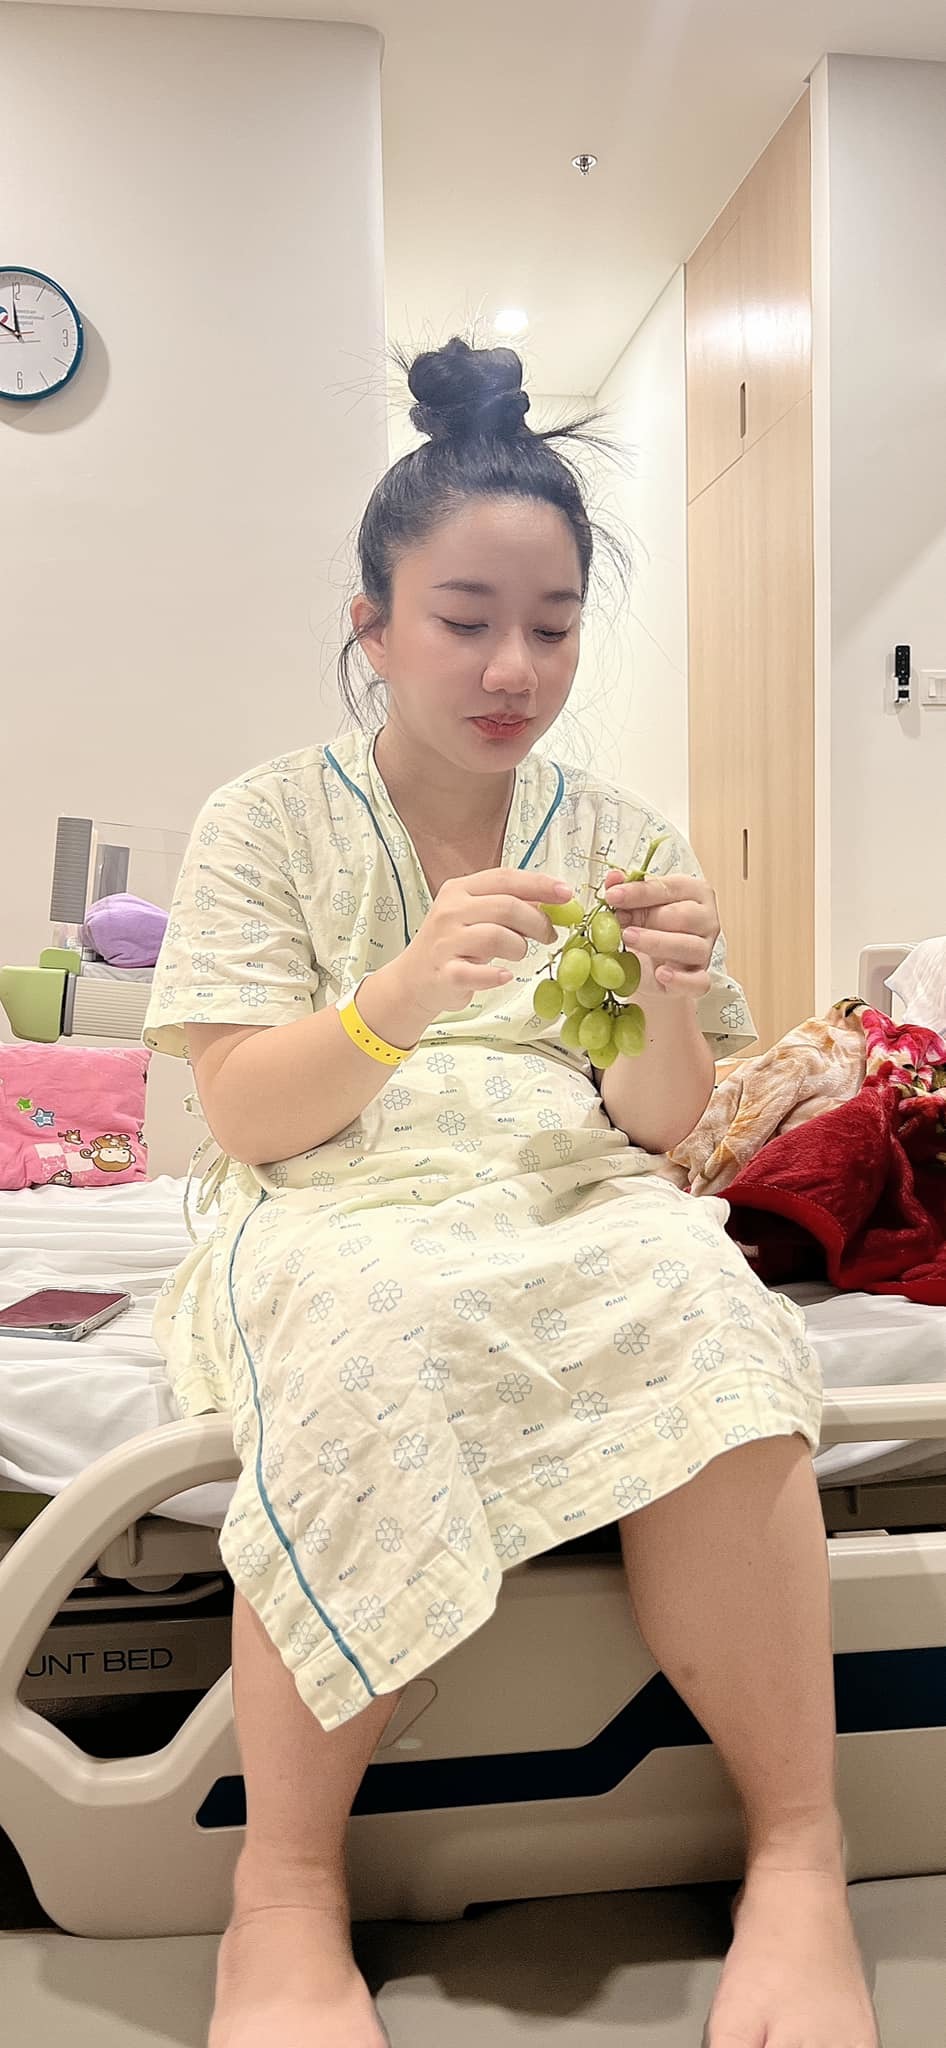  
Hiện tại, Quỳnh Quỳnh đã hồi phục sức khỏe và đang tập đi. (Ảnh: Facebook Lê Dương Bảo Lâm)